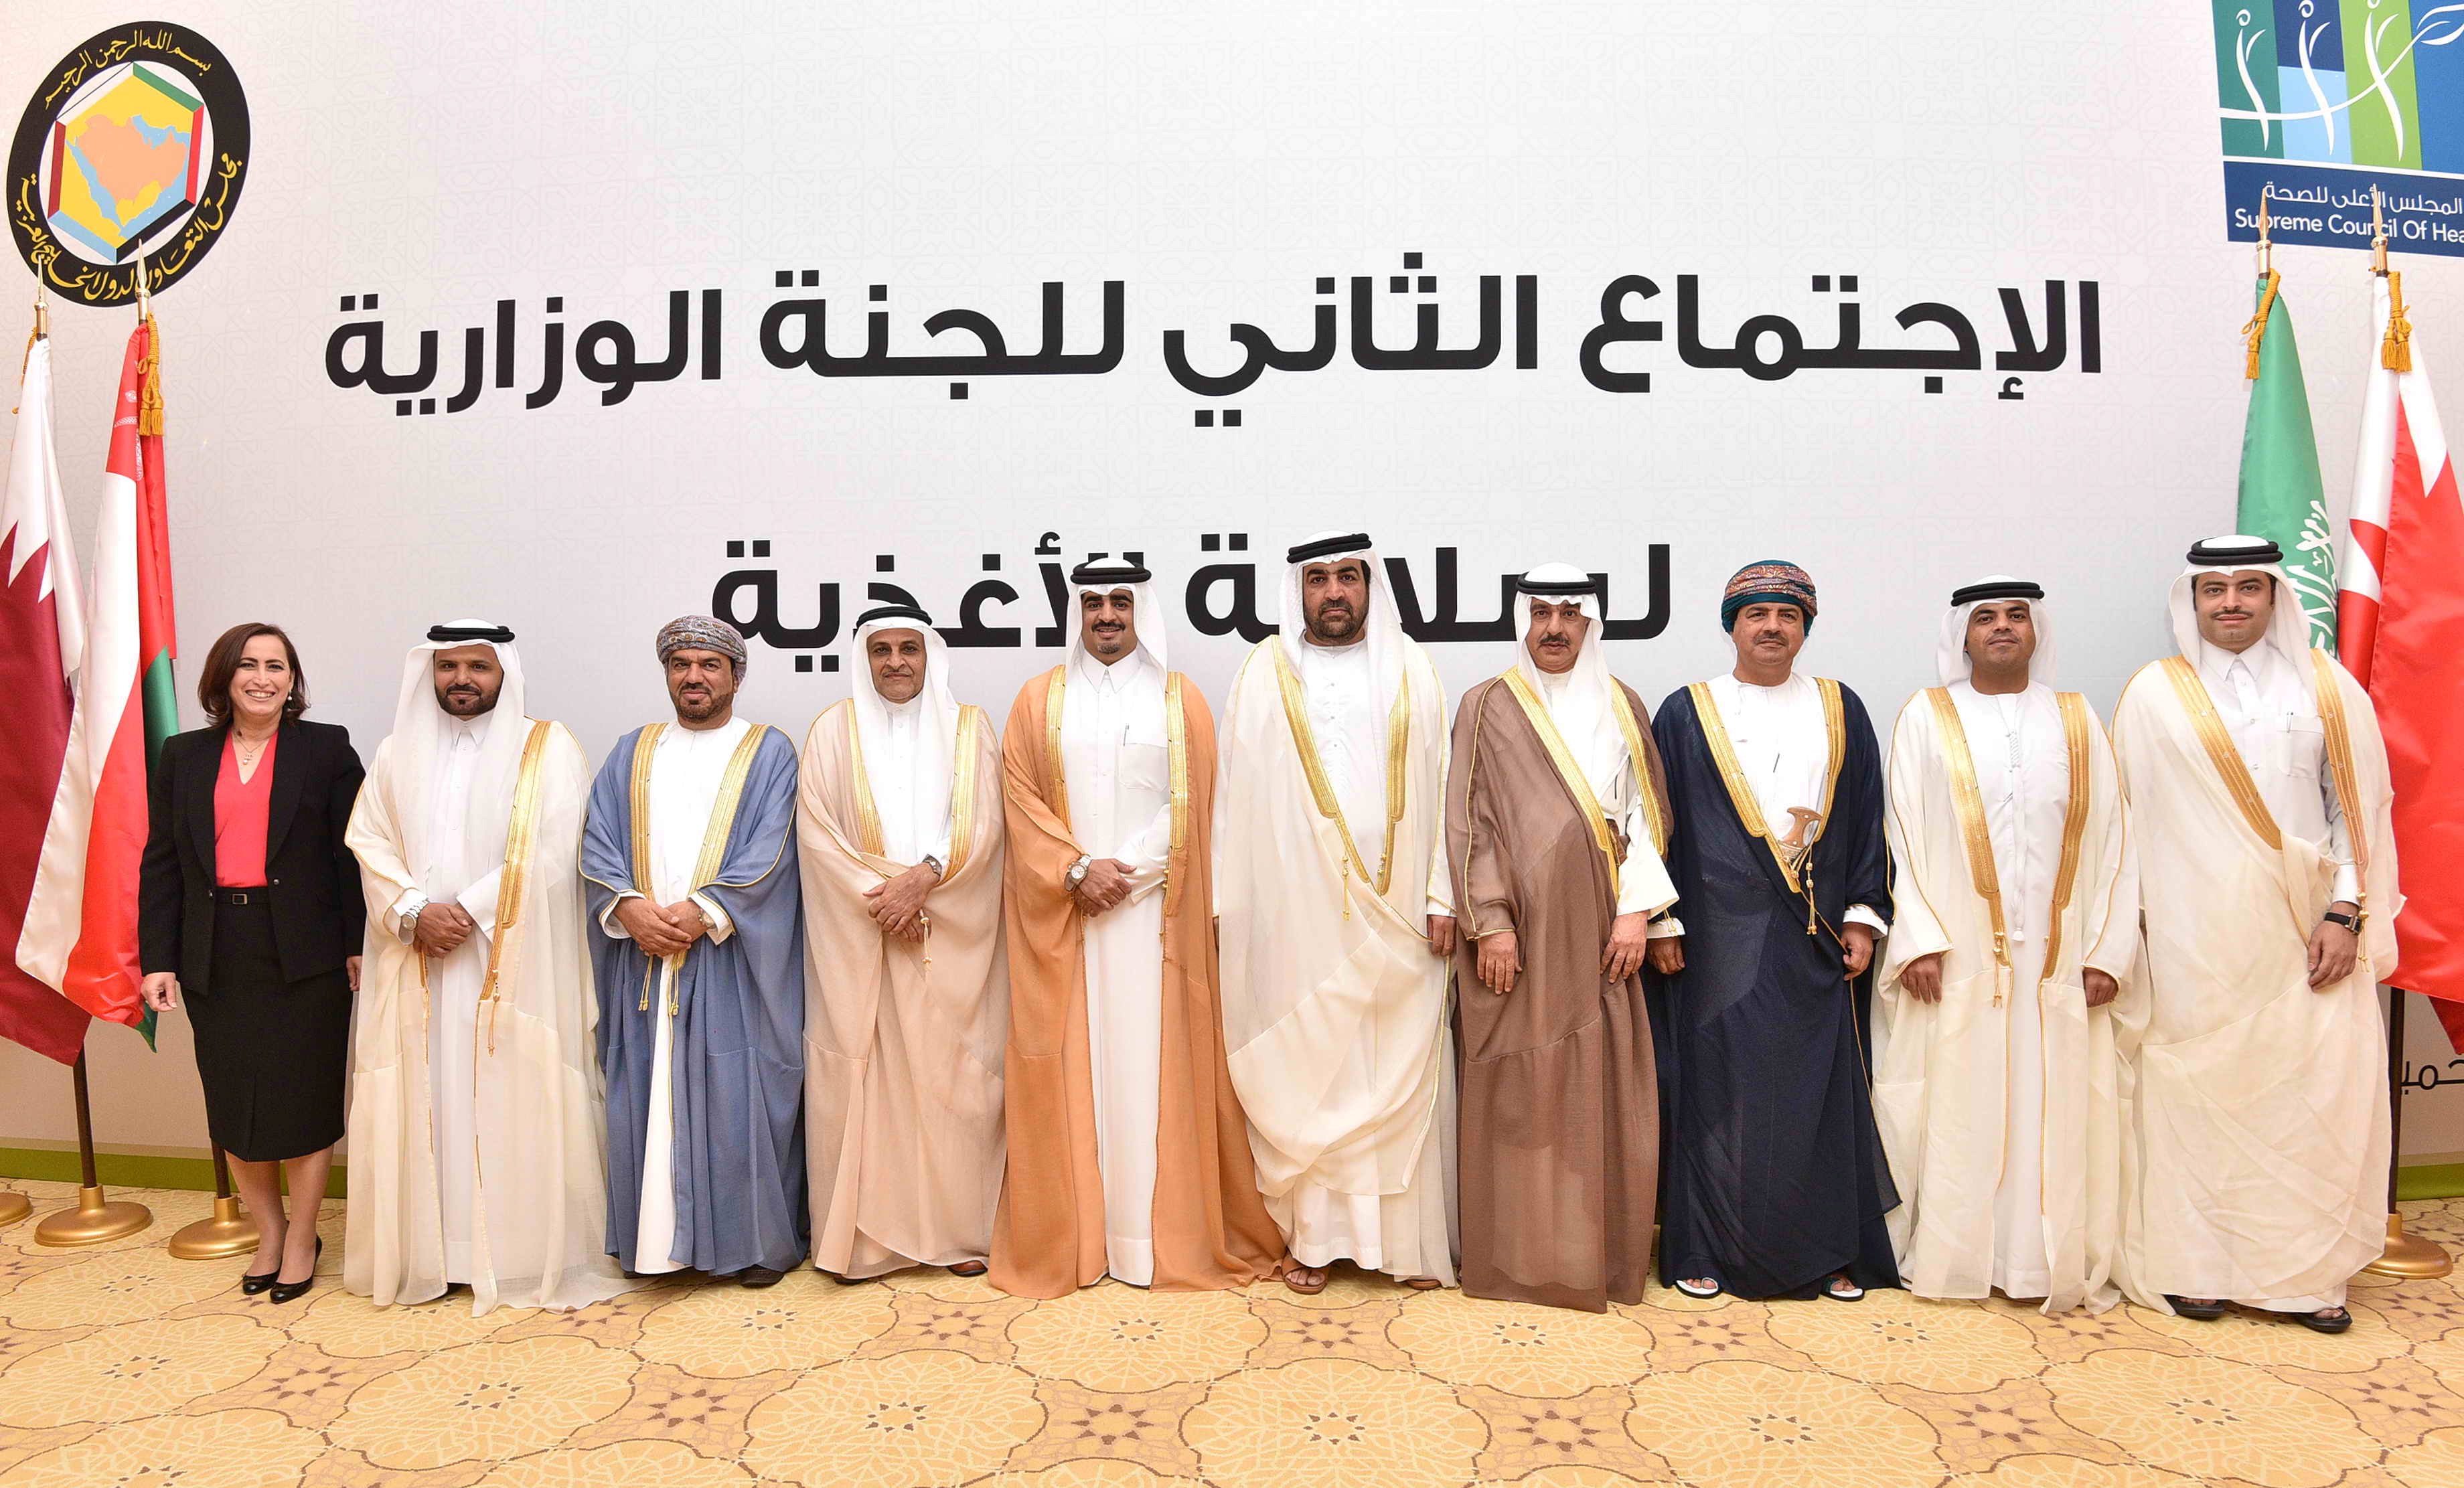 المشاركين في أعمال الاجتماع الثاني للجنة الوزارية الخليجية لسلامة الاغذية في الدوحة